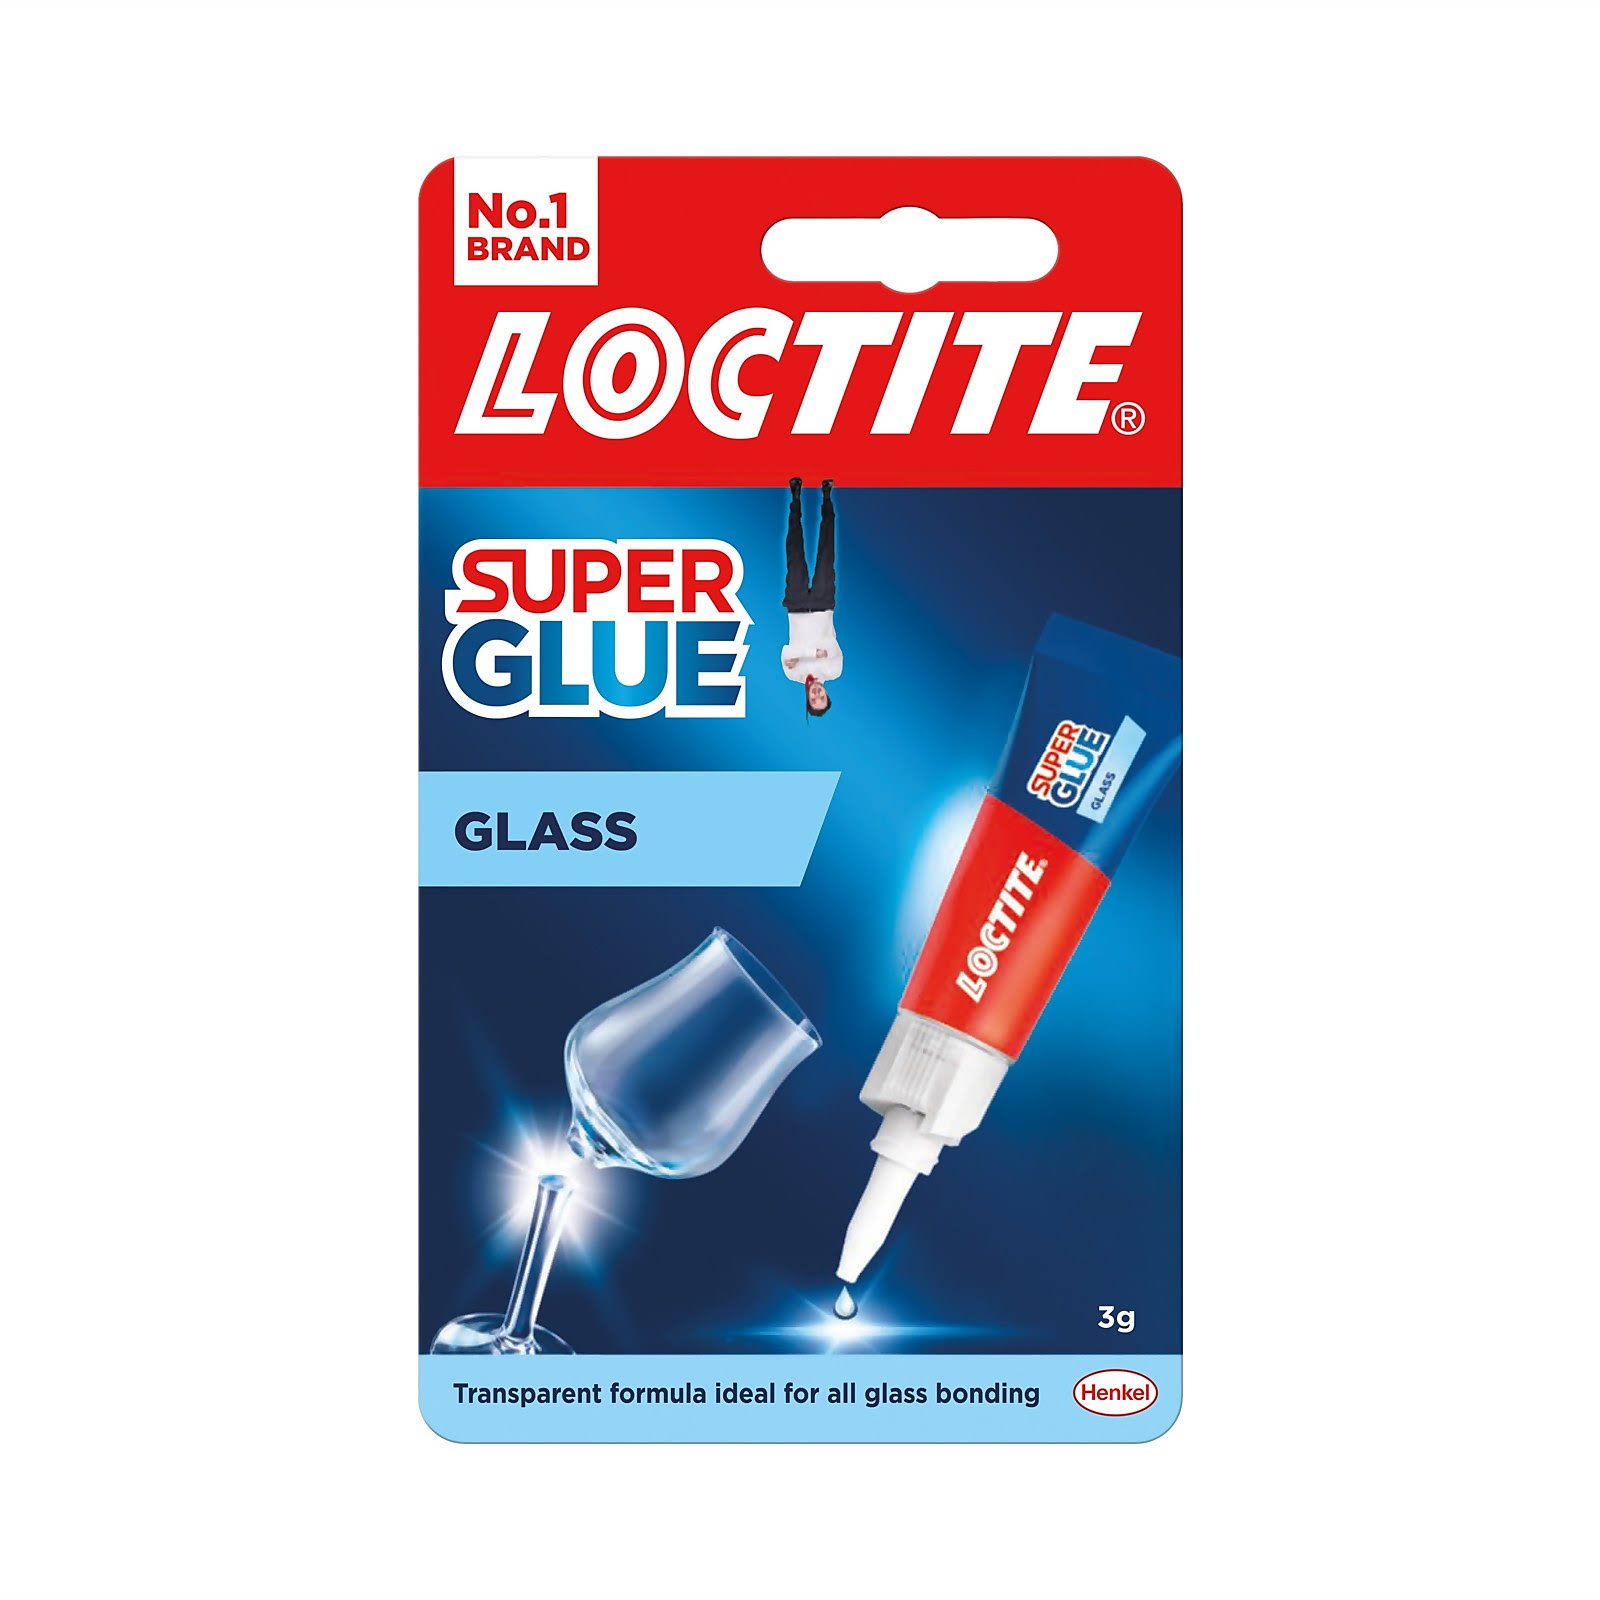 LOCTITE Super Glue - Glass Bond Adhesive - 3g Tube